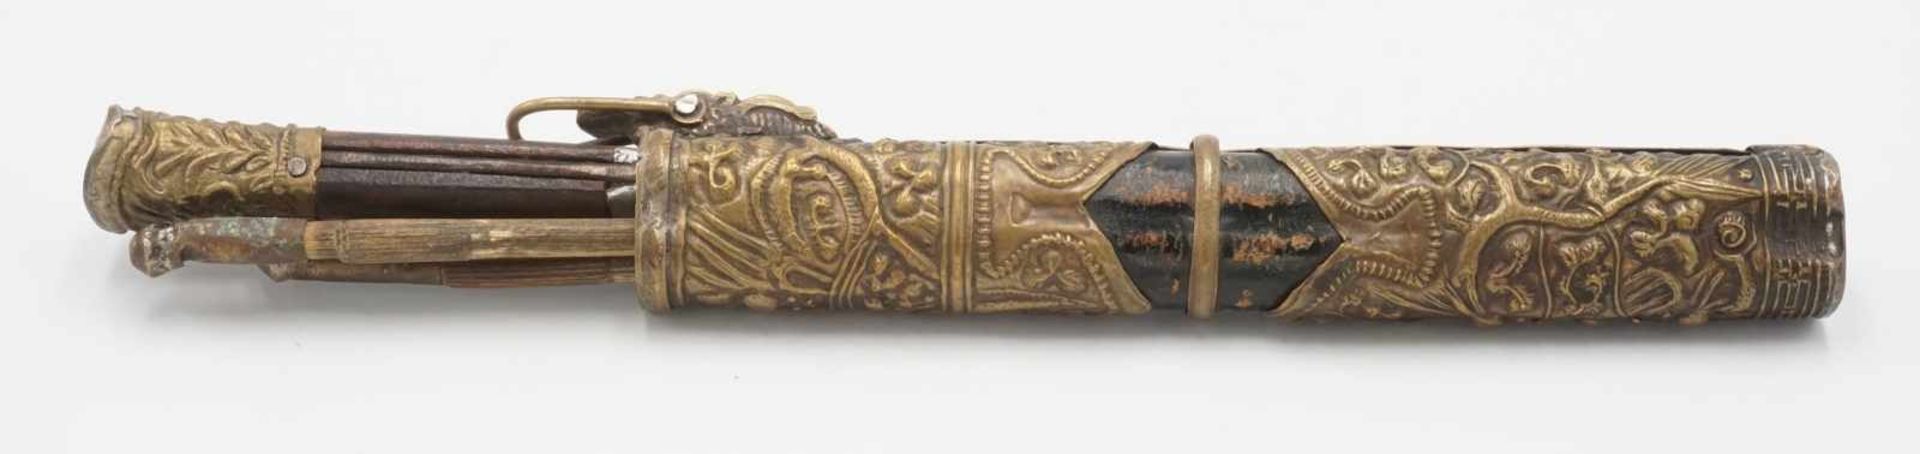 Essbesteck, Tibet, 1. Hälfte 20. Jh.Messer und zwei Stäbchen im metallbeschlagenem Etui, altersgemäß - Bild 2 aus 3